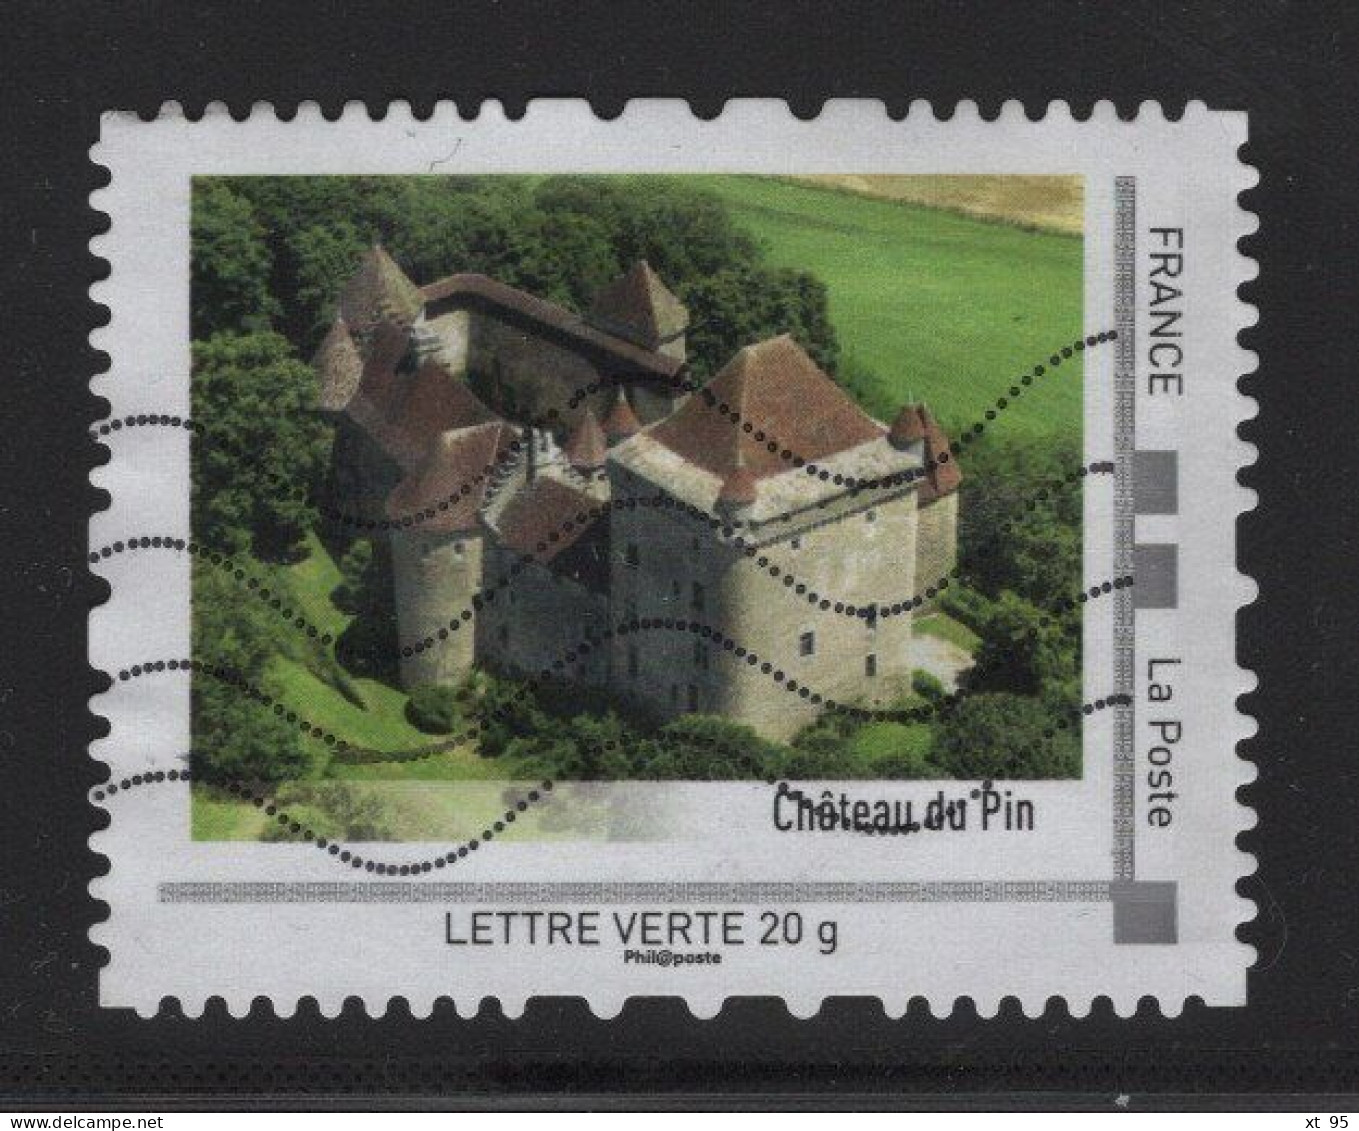 Timbre Personnalise Oblitere - Lettre Verte 20g - Chateau Du Pin - Gebraucht